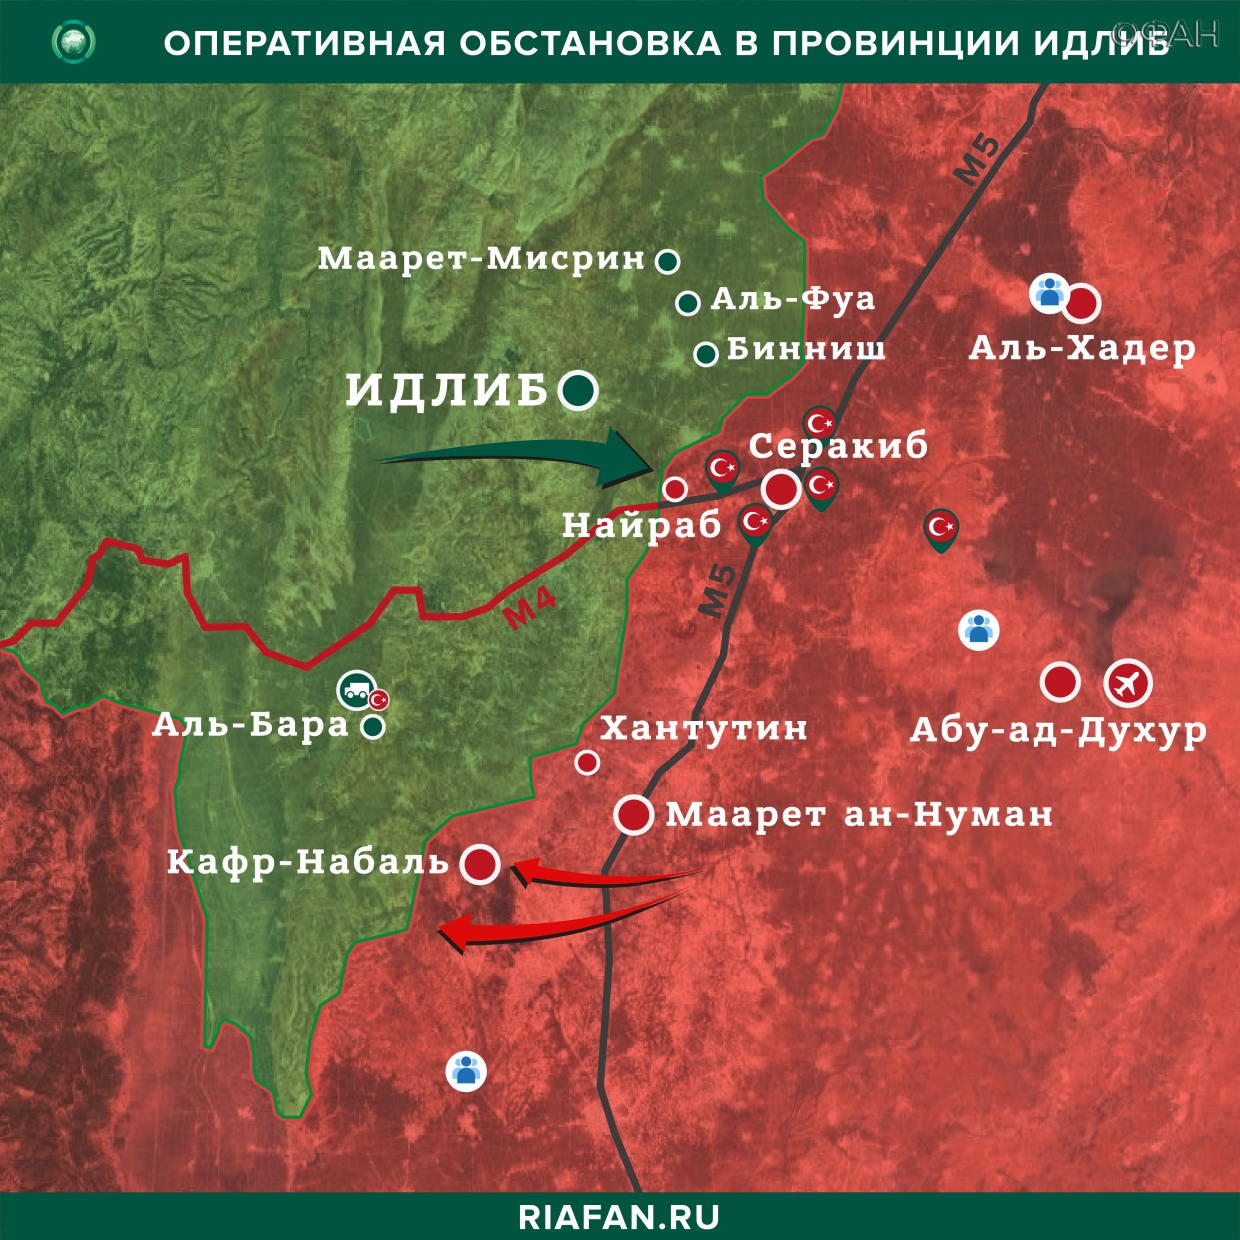 Nouvelles de Syrie 1 Mars 19.30: сирийские системы ПВО будут сбивать все вражеские цели над Идлибом, провокации боевиков в Даръа